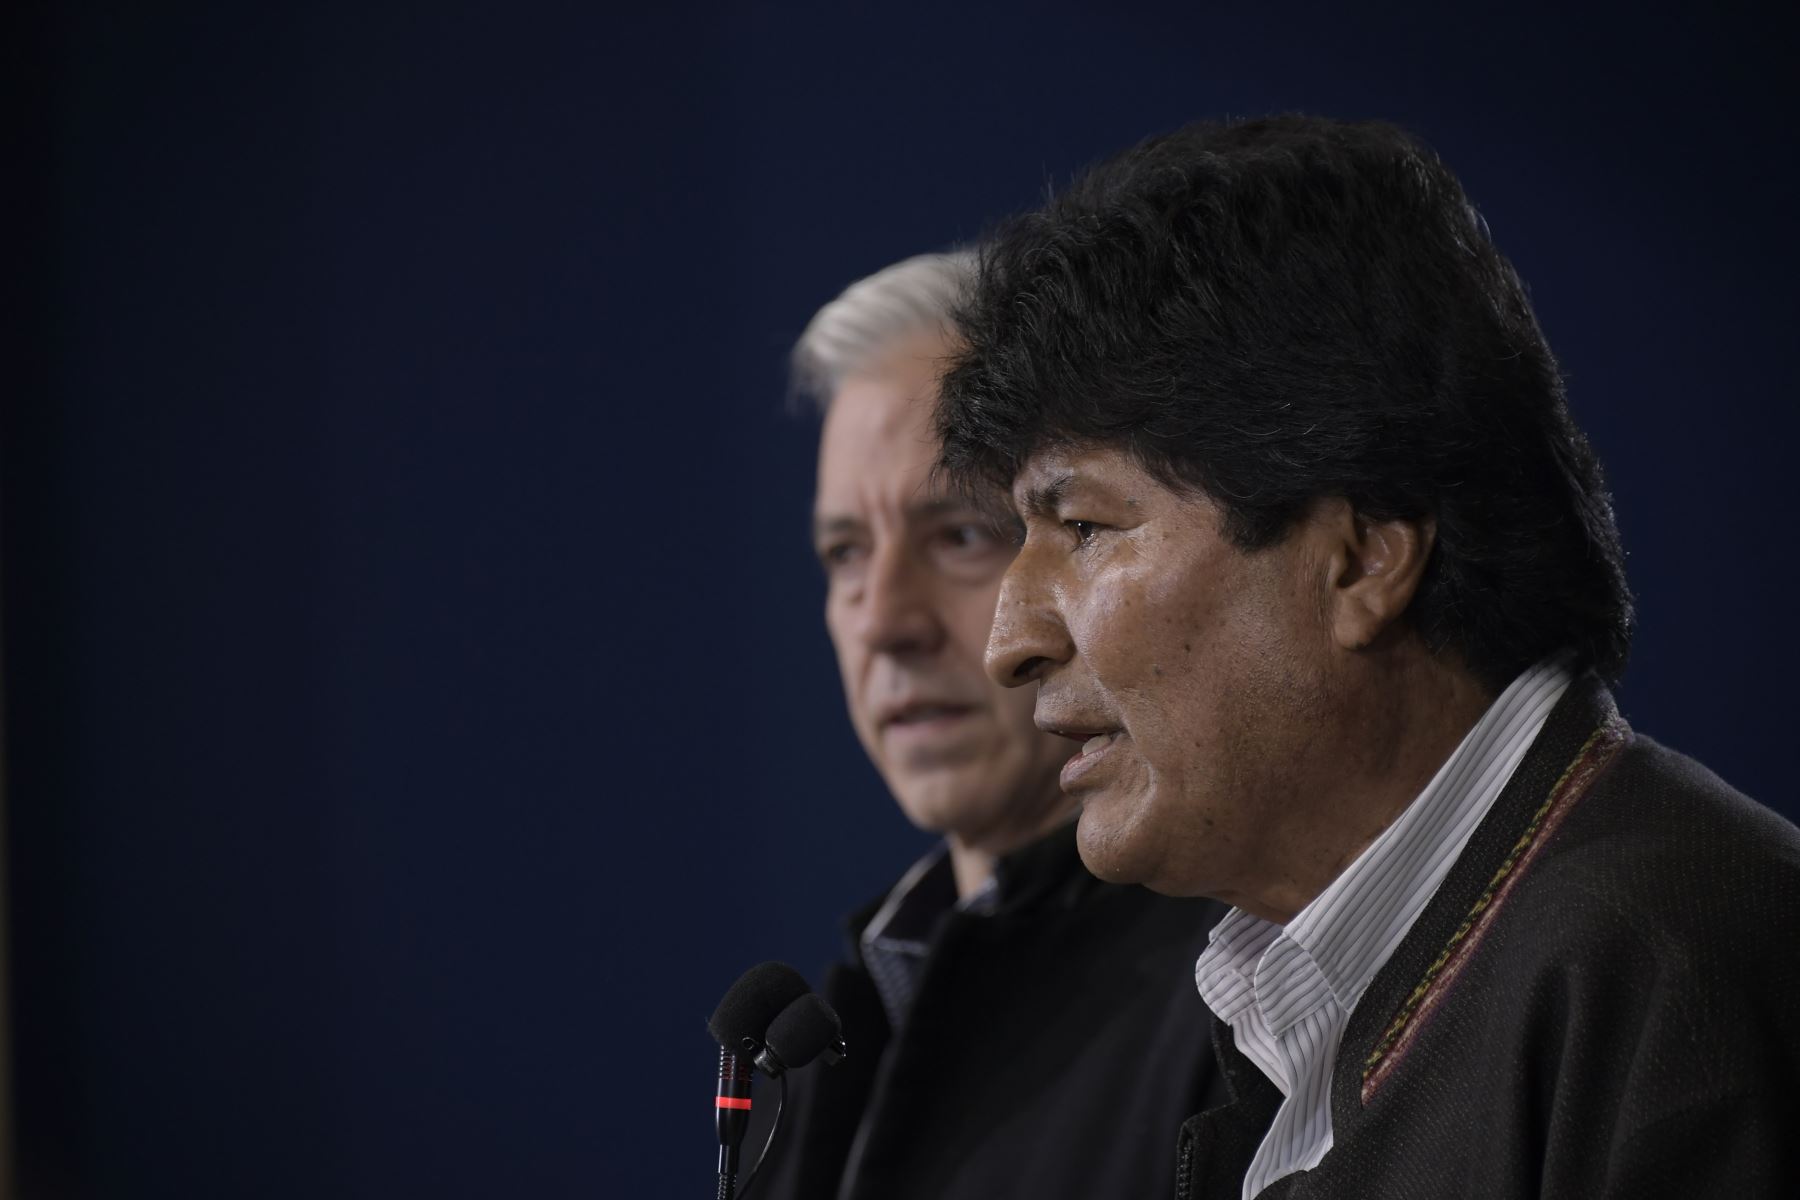 En conferencia de prensa, el presidente Evo Morales convoca a nuevas elecciones en Bolivia.
Foto: Agencia Boliviana de Información